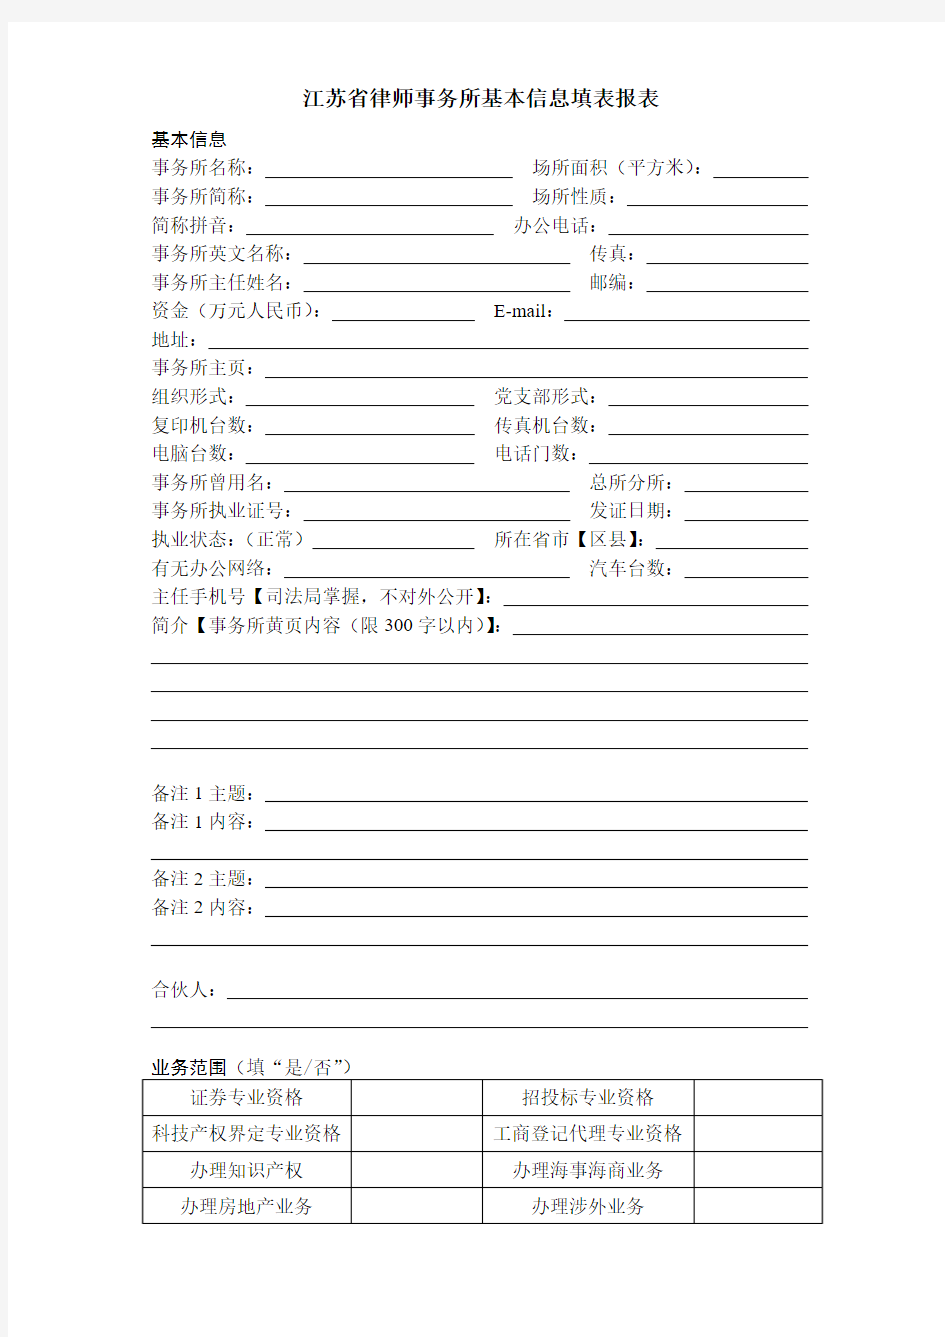 江苏省律师事务所基本信息填表报表